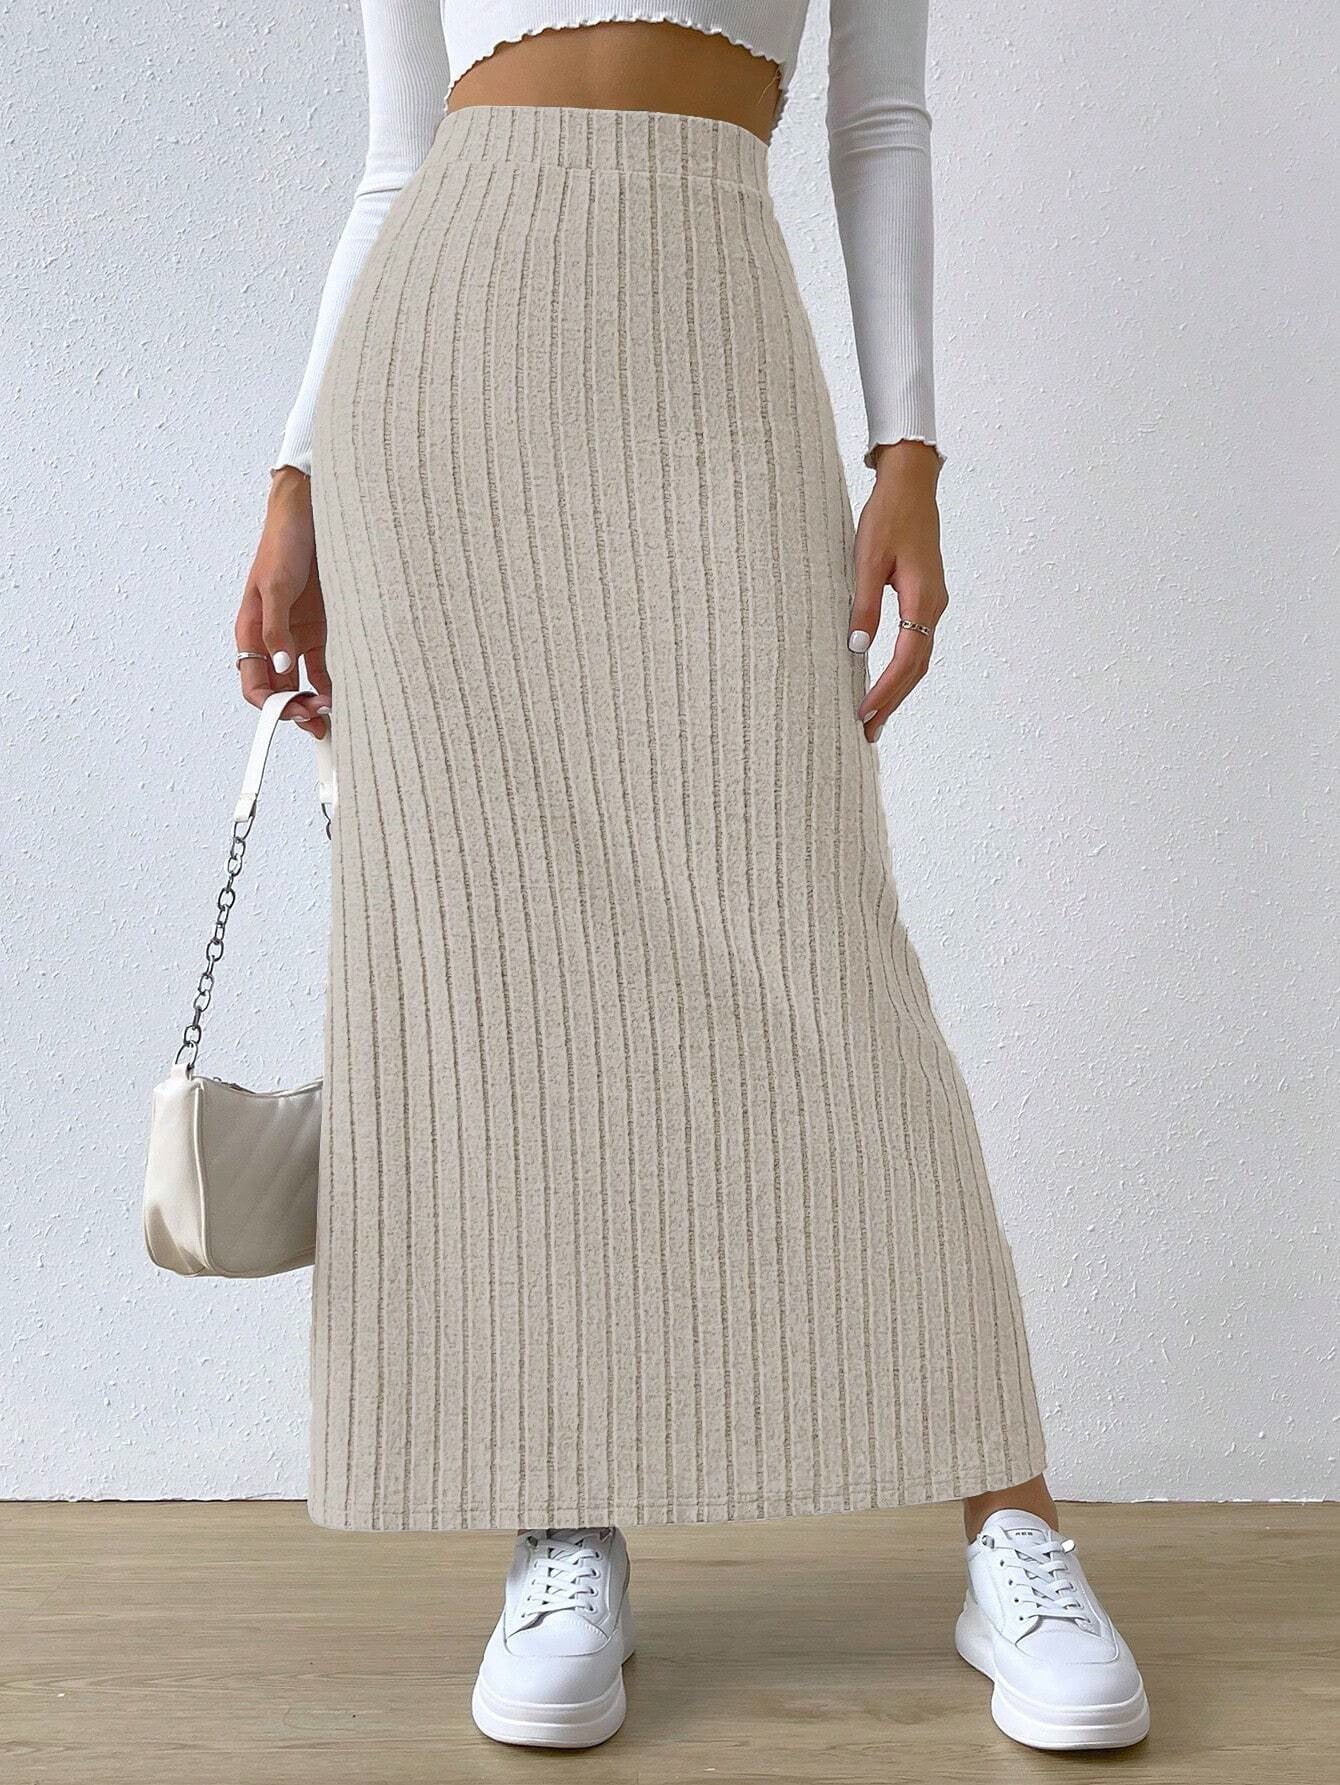 Women's spring long skirt, side slit, slim fit, knitted skirt, casual